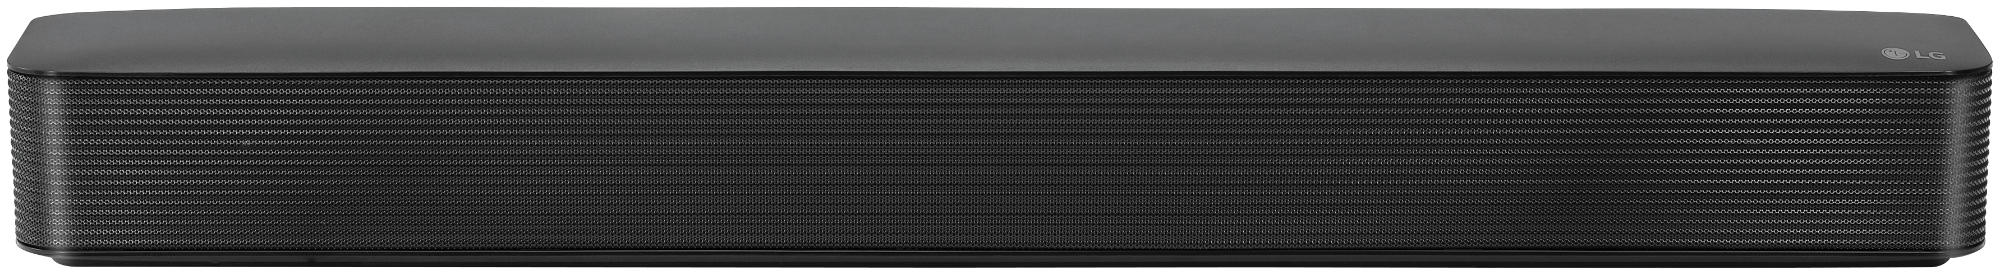 Barra de sonido - LG SK1, 2.1, 40 W, Dolby Digital, Bluetooth